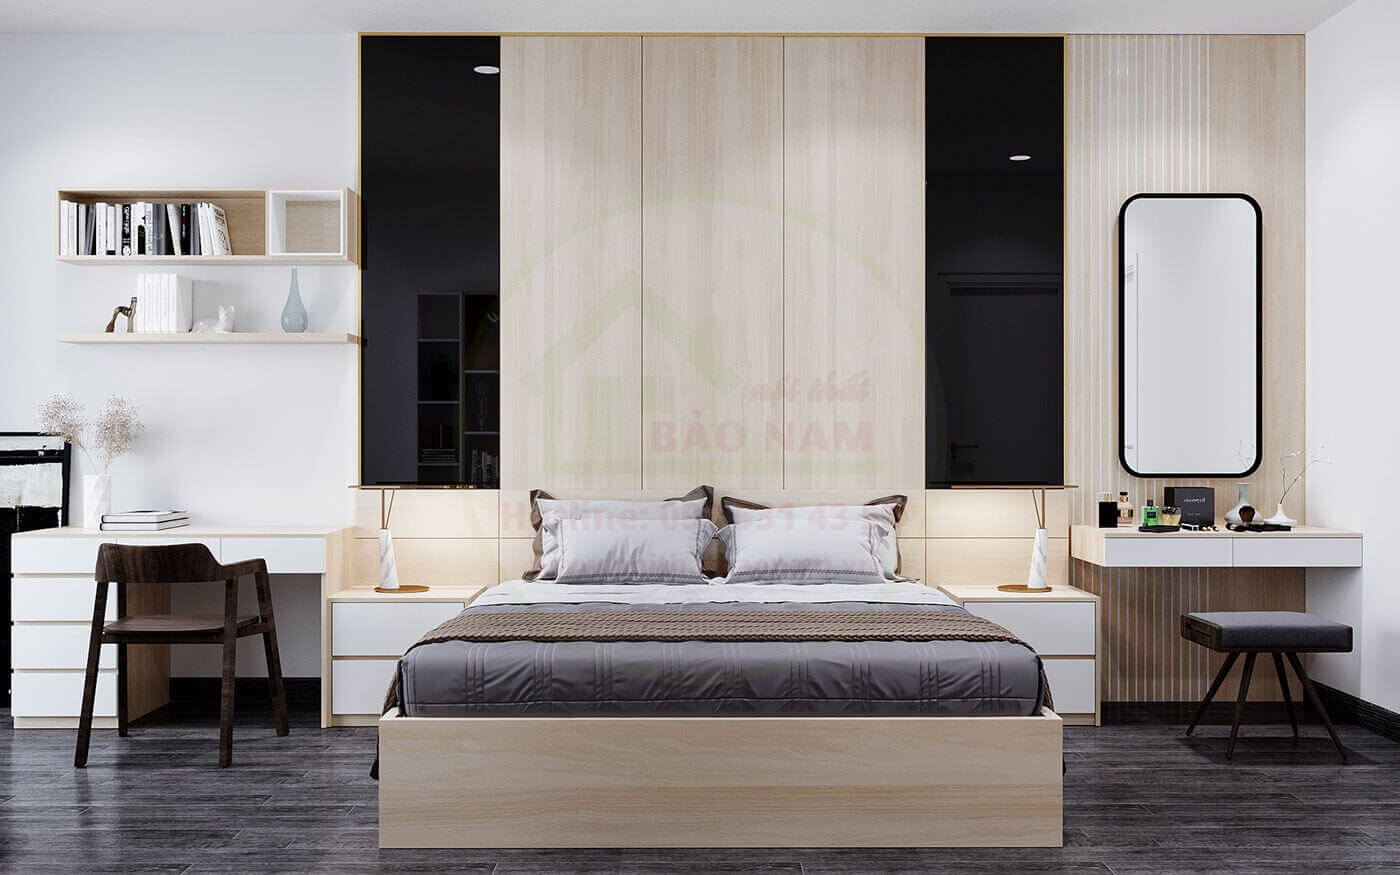 Giường ngủ gỗ công nghiệp An Cường sẽ là lựa chọn tuyệt vời cho các bạn yêu thích phong cách hiện đại và đặc biệt là những căn phòng có diện tích nhỏ hẹp. Với thiết kế gọn nhẹ, sản phẩm đảm bảo sự chắc chắn và đẹp mắt, giúp bạn có một không gian ngủ tối ưu trong căn phòng của mình.